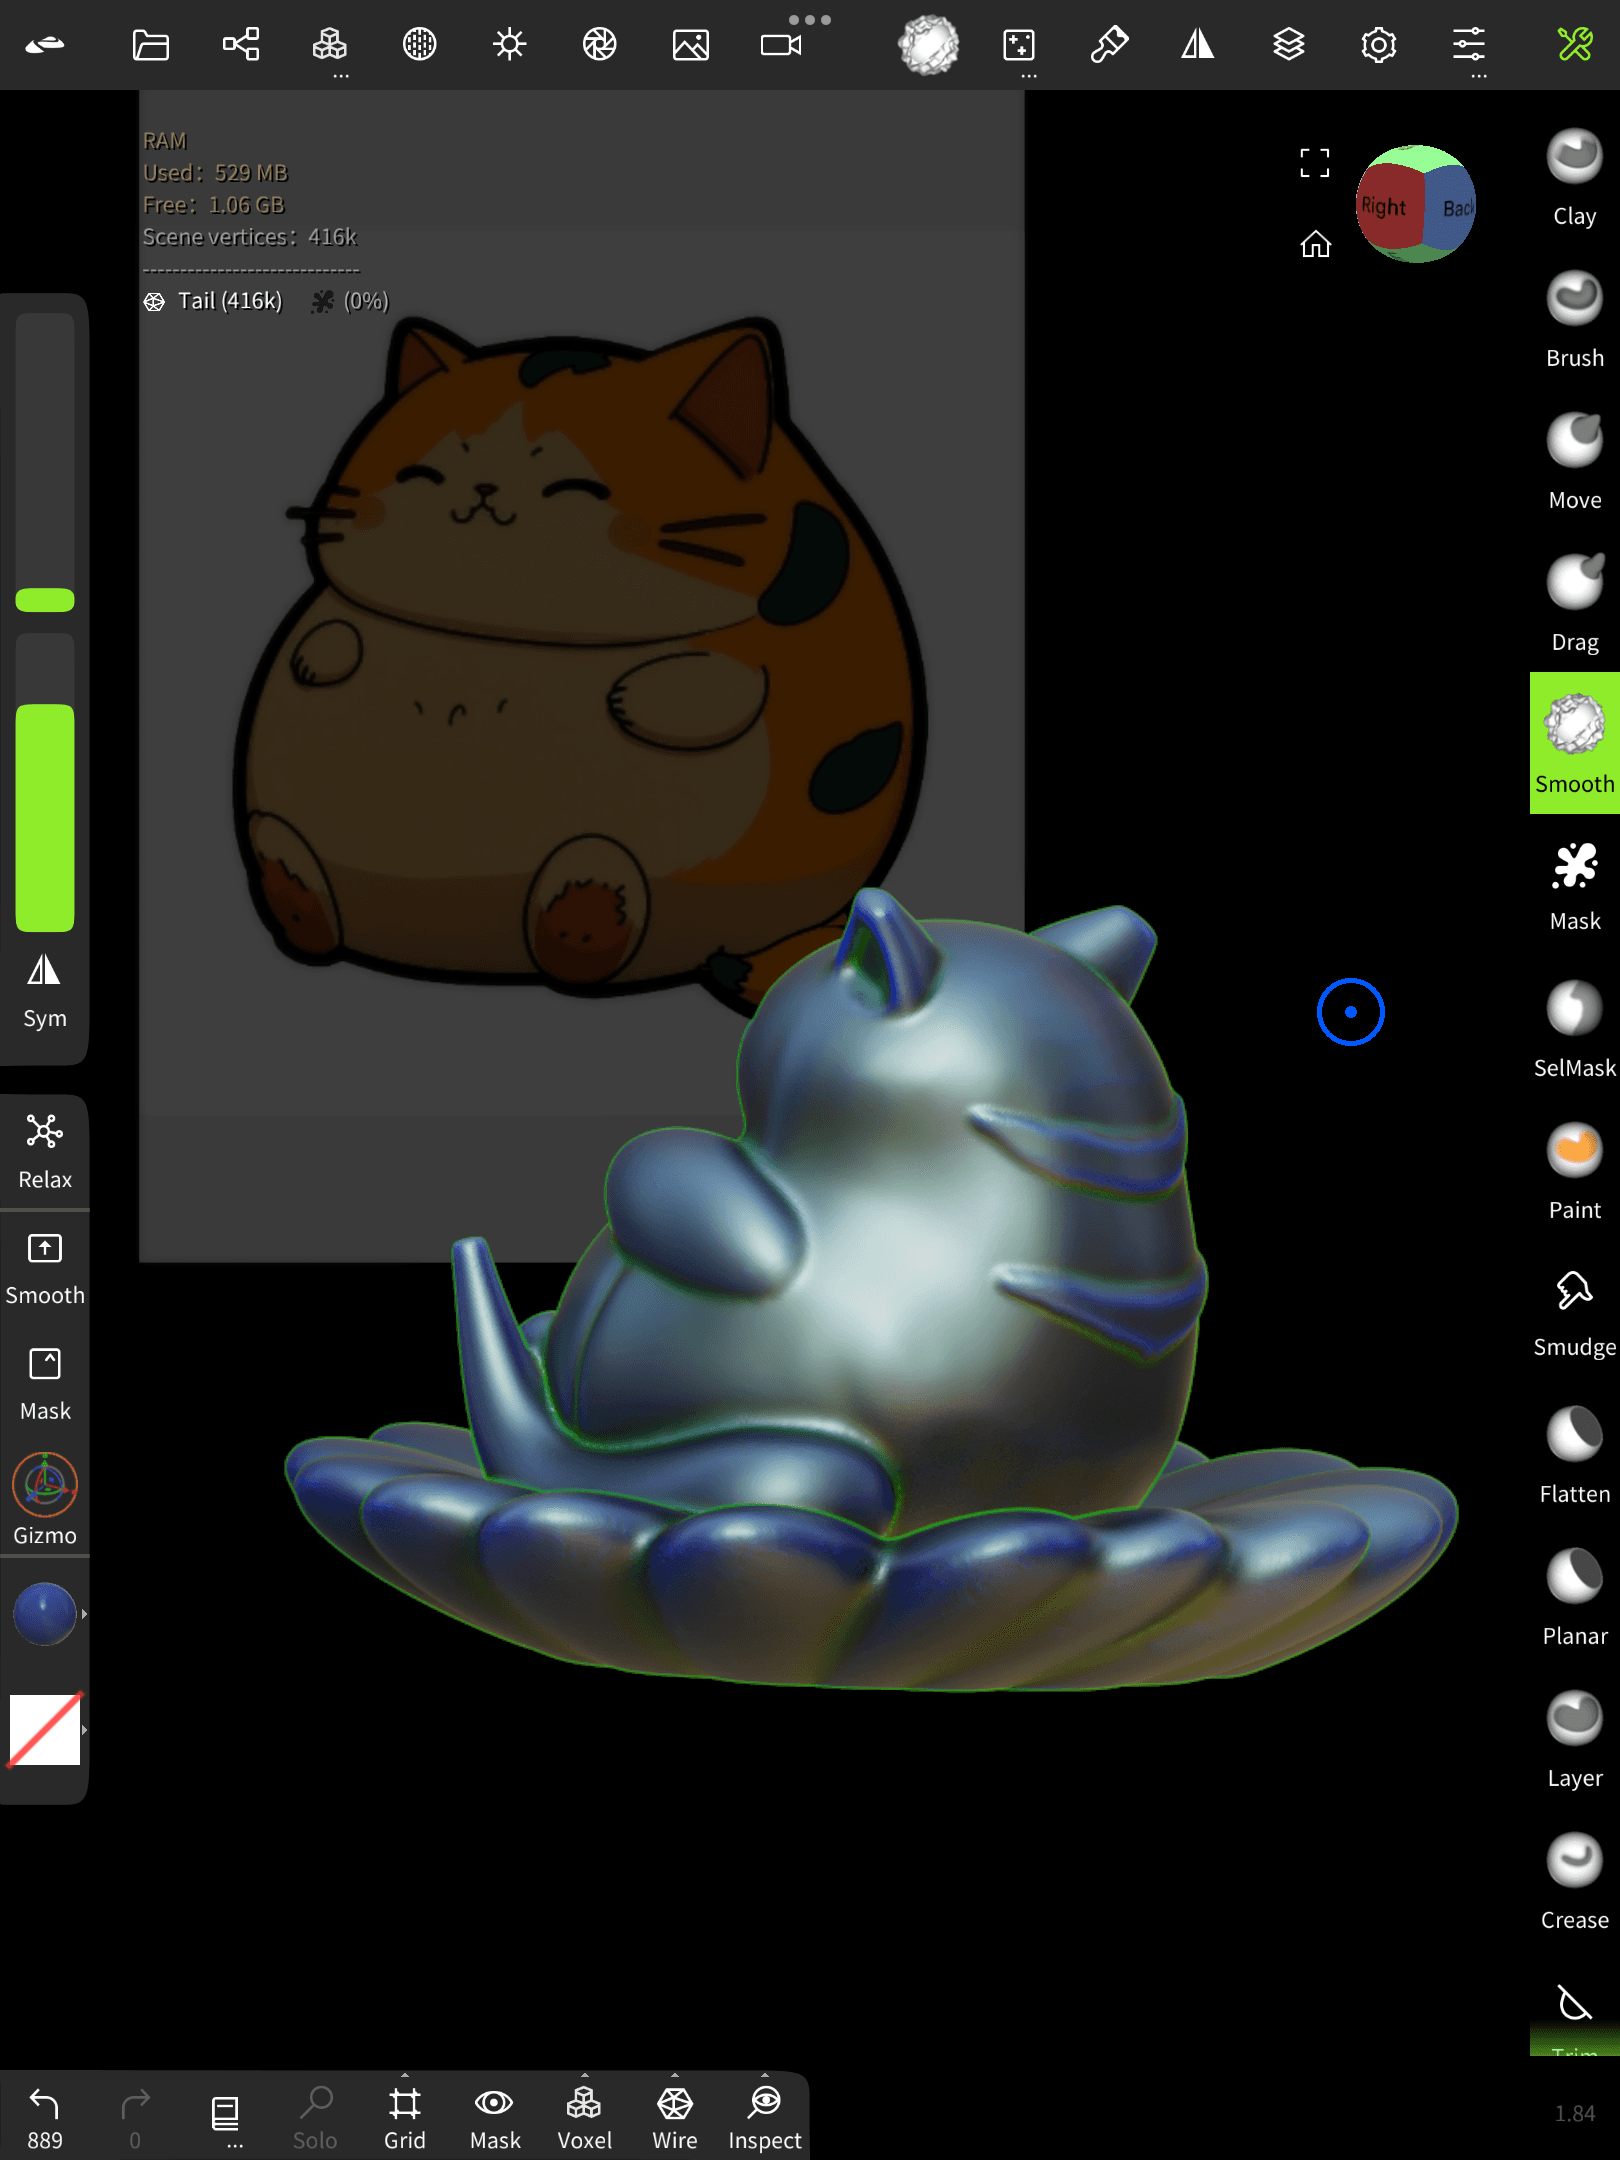 Cat Sitting On Flower (Fishtank Floater or Decoration) 3d model